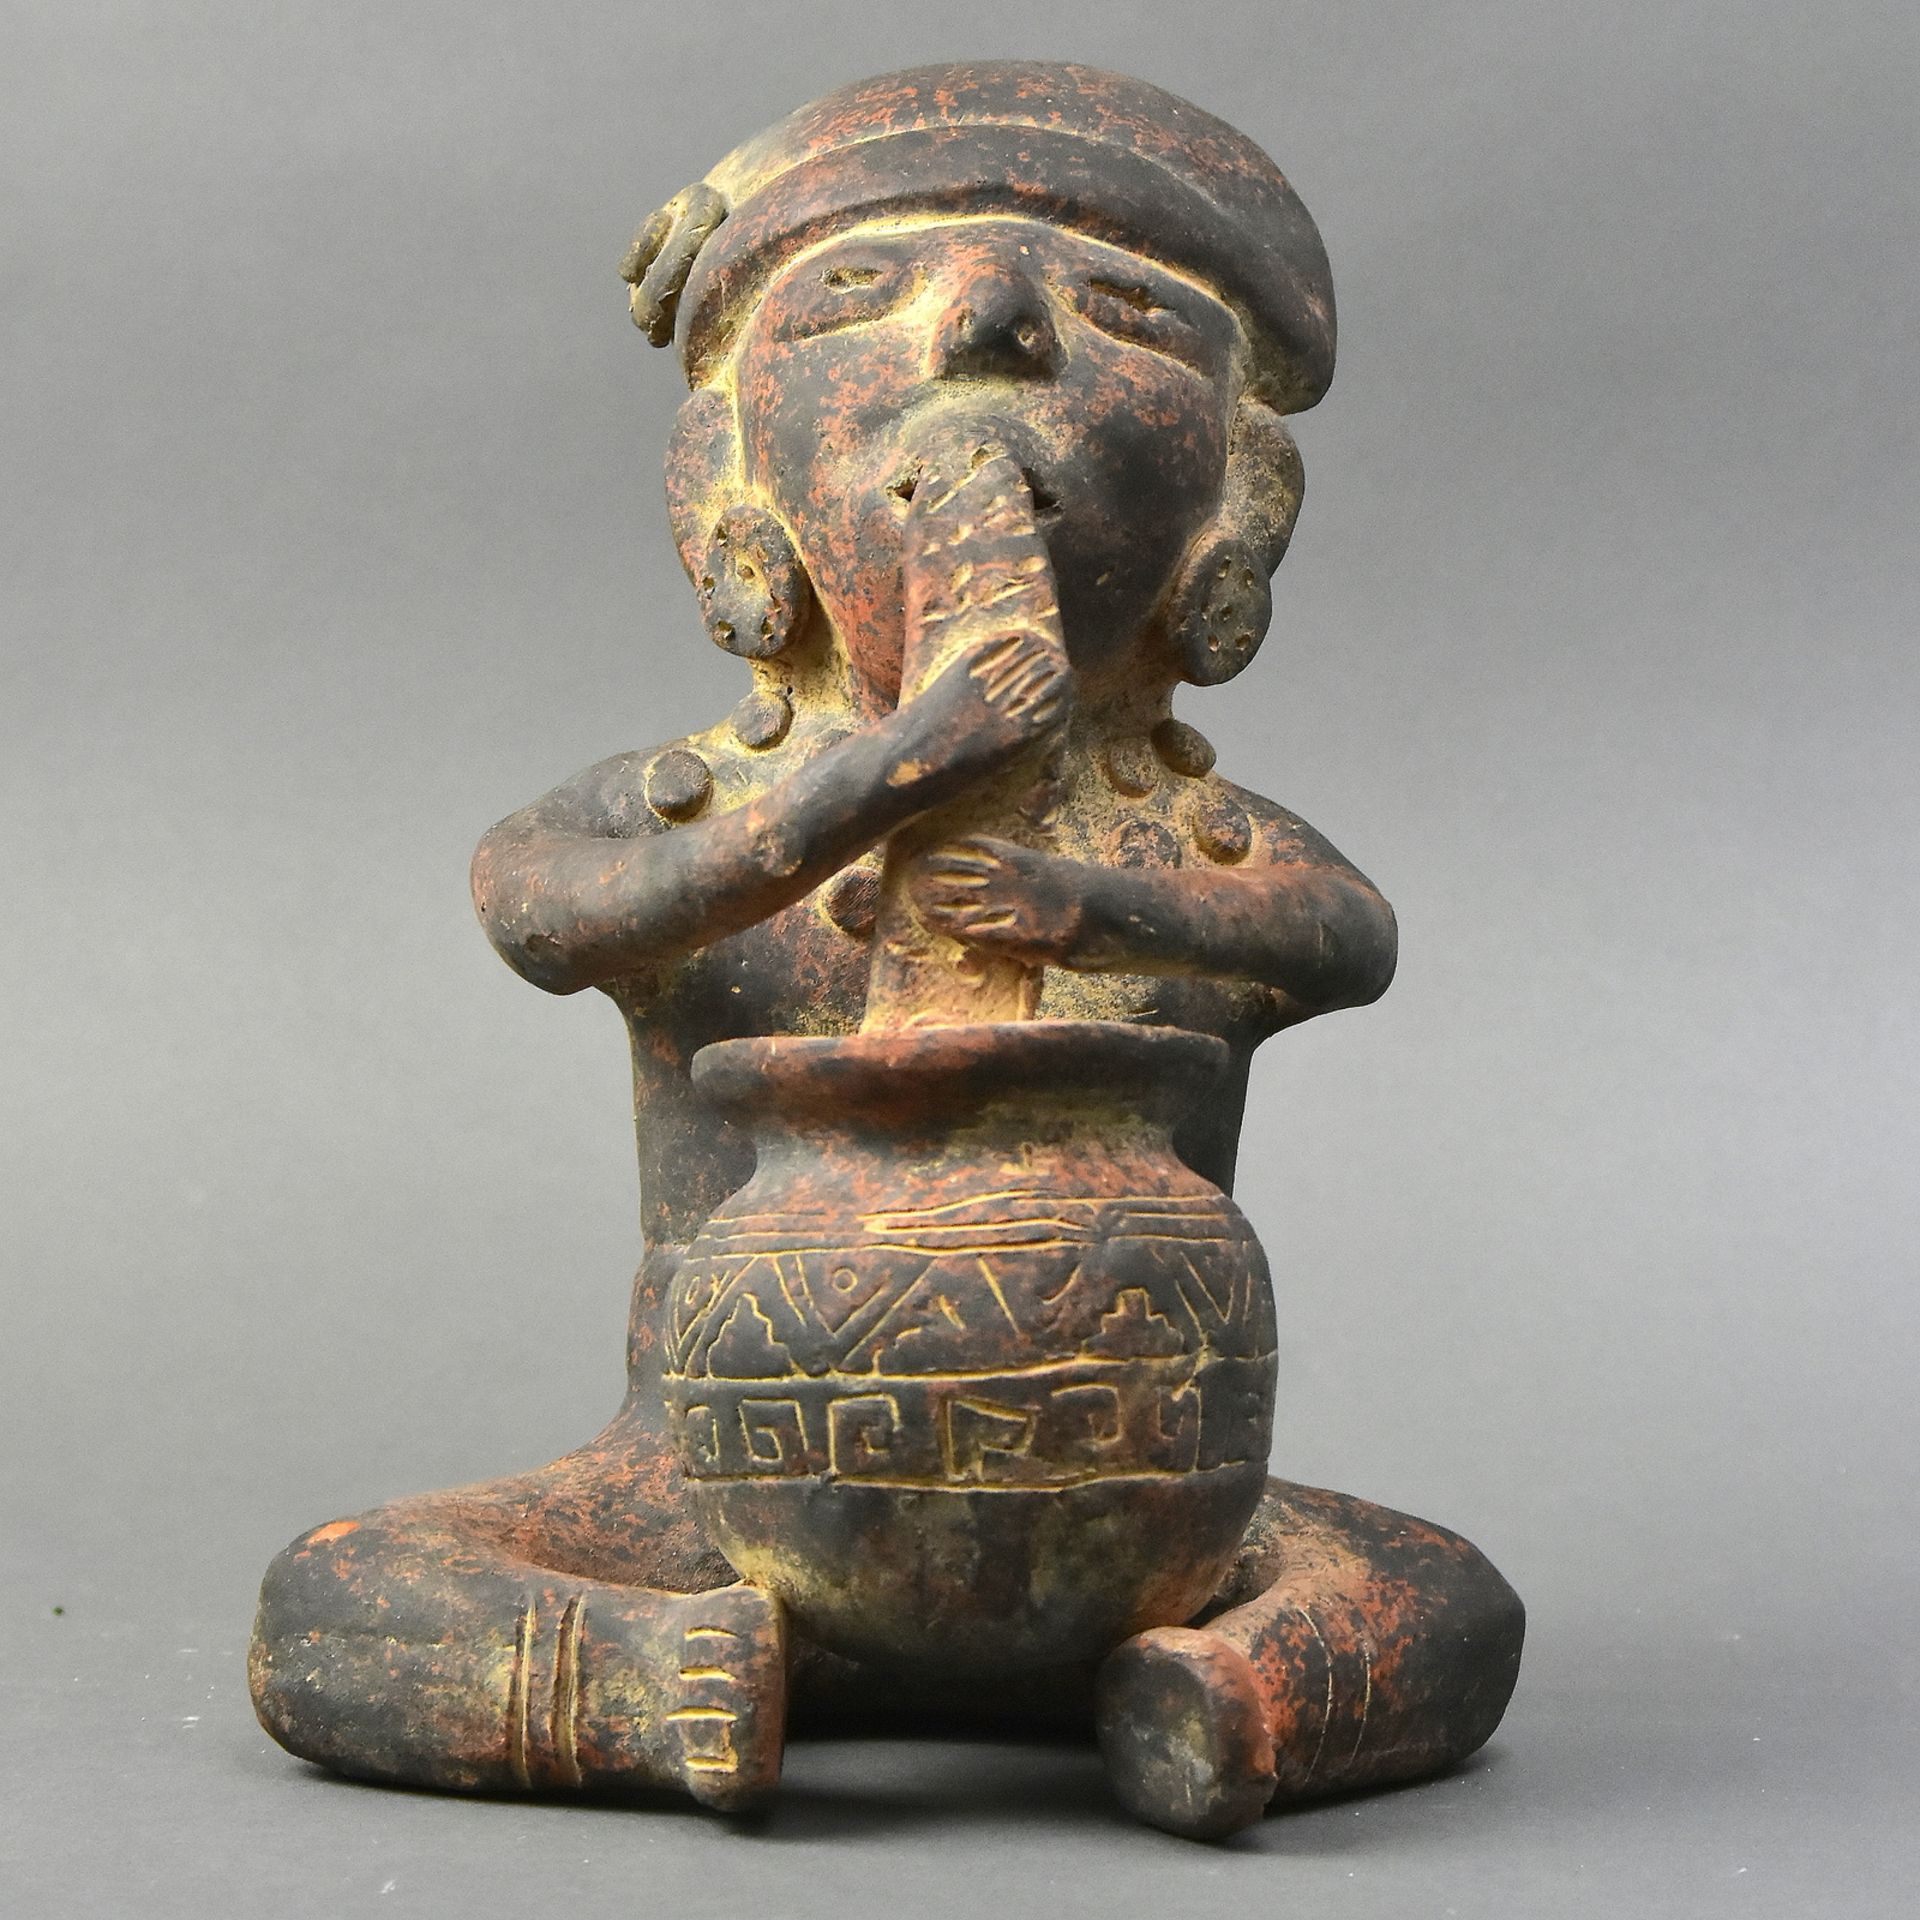 Tonfigur Kolumbien, wohl Chibcha-Kultur (1000-1500 nach Christus), H 25 cm